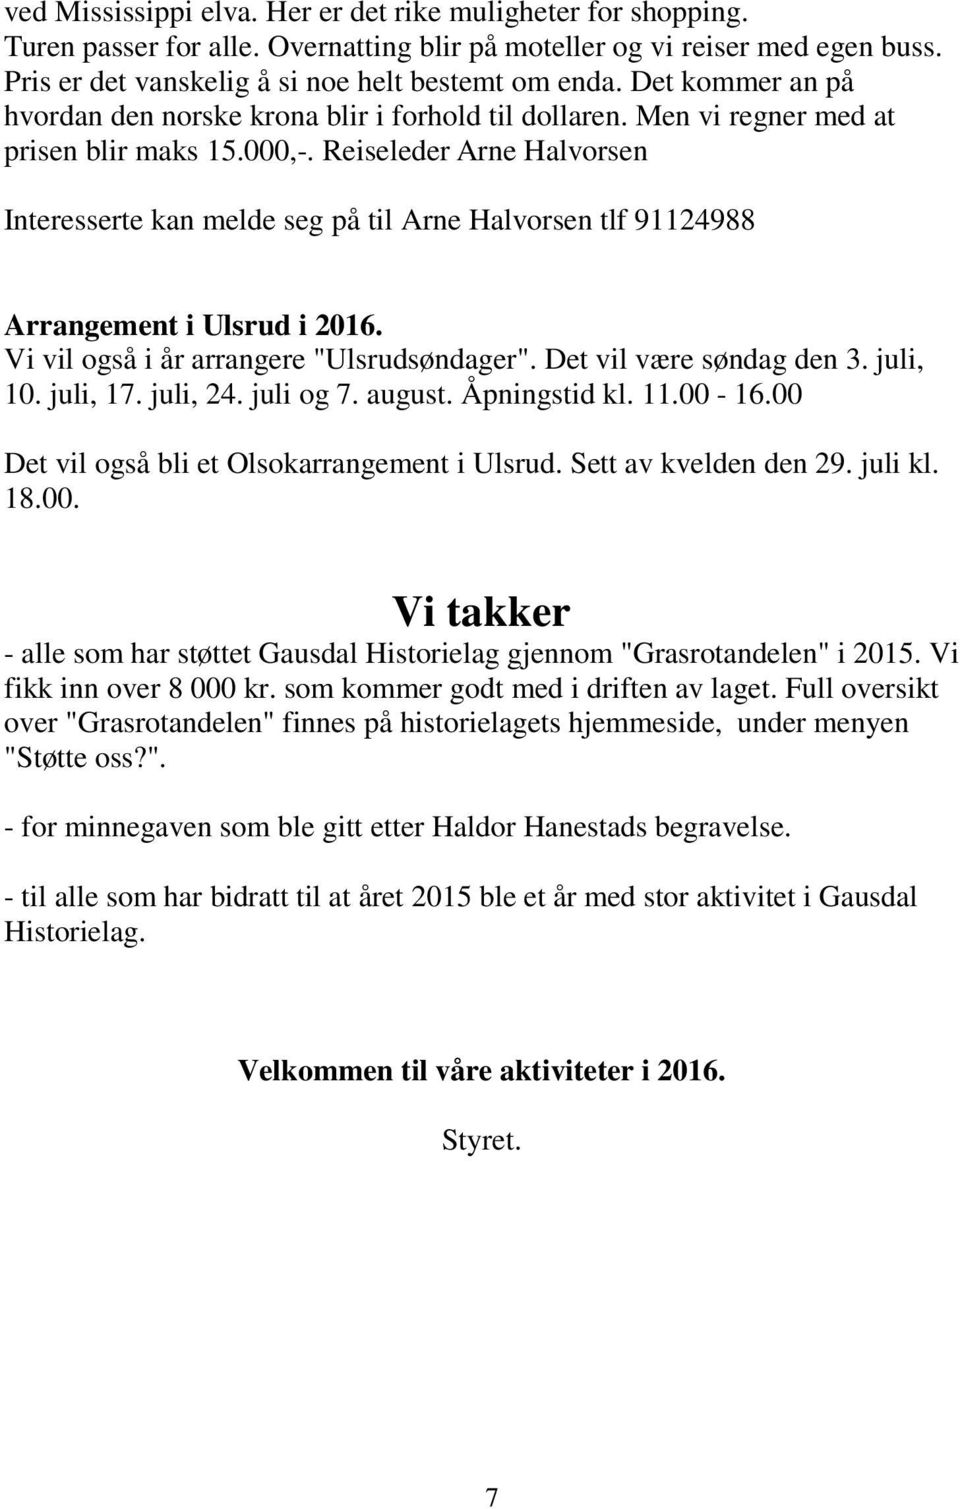 Reiseleder Arne Halvorsen Interesserte kan melde seg på til Arne Halvorsen tlf 91124988 Arrangement i Ulsrud i 2016. Vi vil også i år arrangere "Ulsrudsøndager". Det vil være søndag den 3. juli, 10.